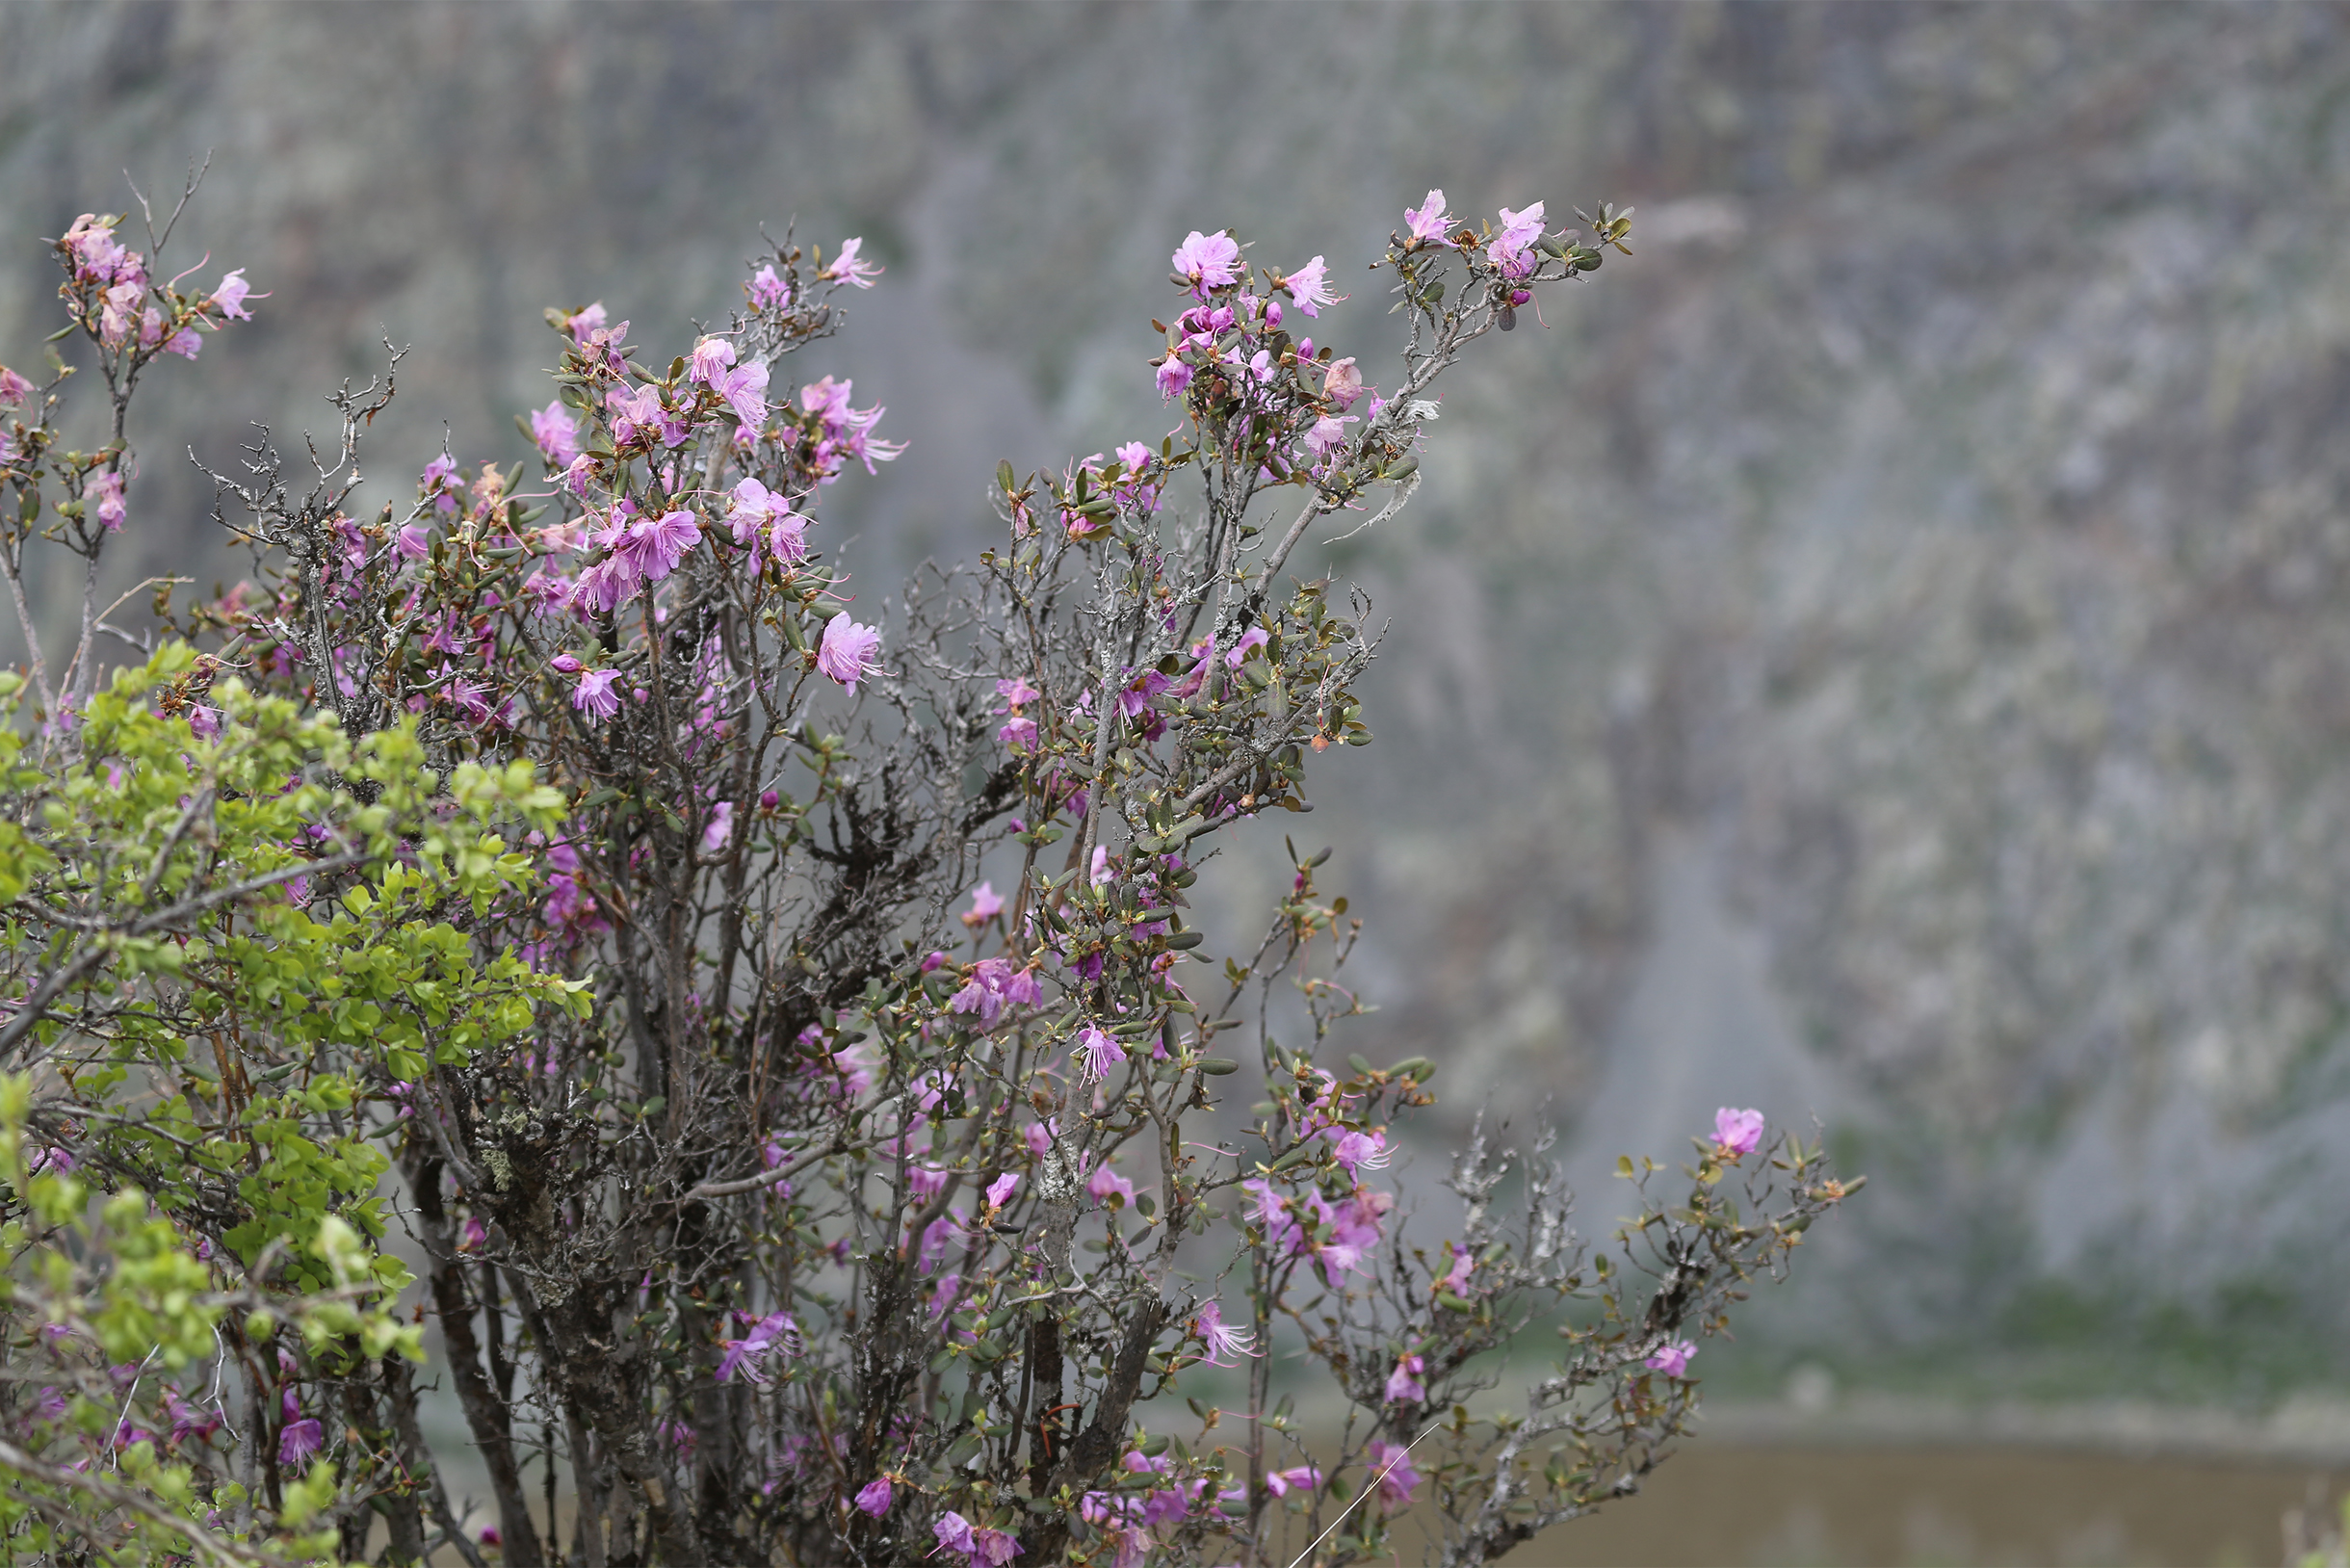 Чуйские меандры — изящные изгибы русла реки Чуи в Курайской степи. Река много раз поворачивает, петляет в разные стороны и образует великолепные пейзажи. Посмотреть сверху можно с многочисленных смотровых площадок